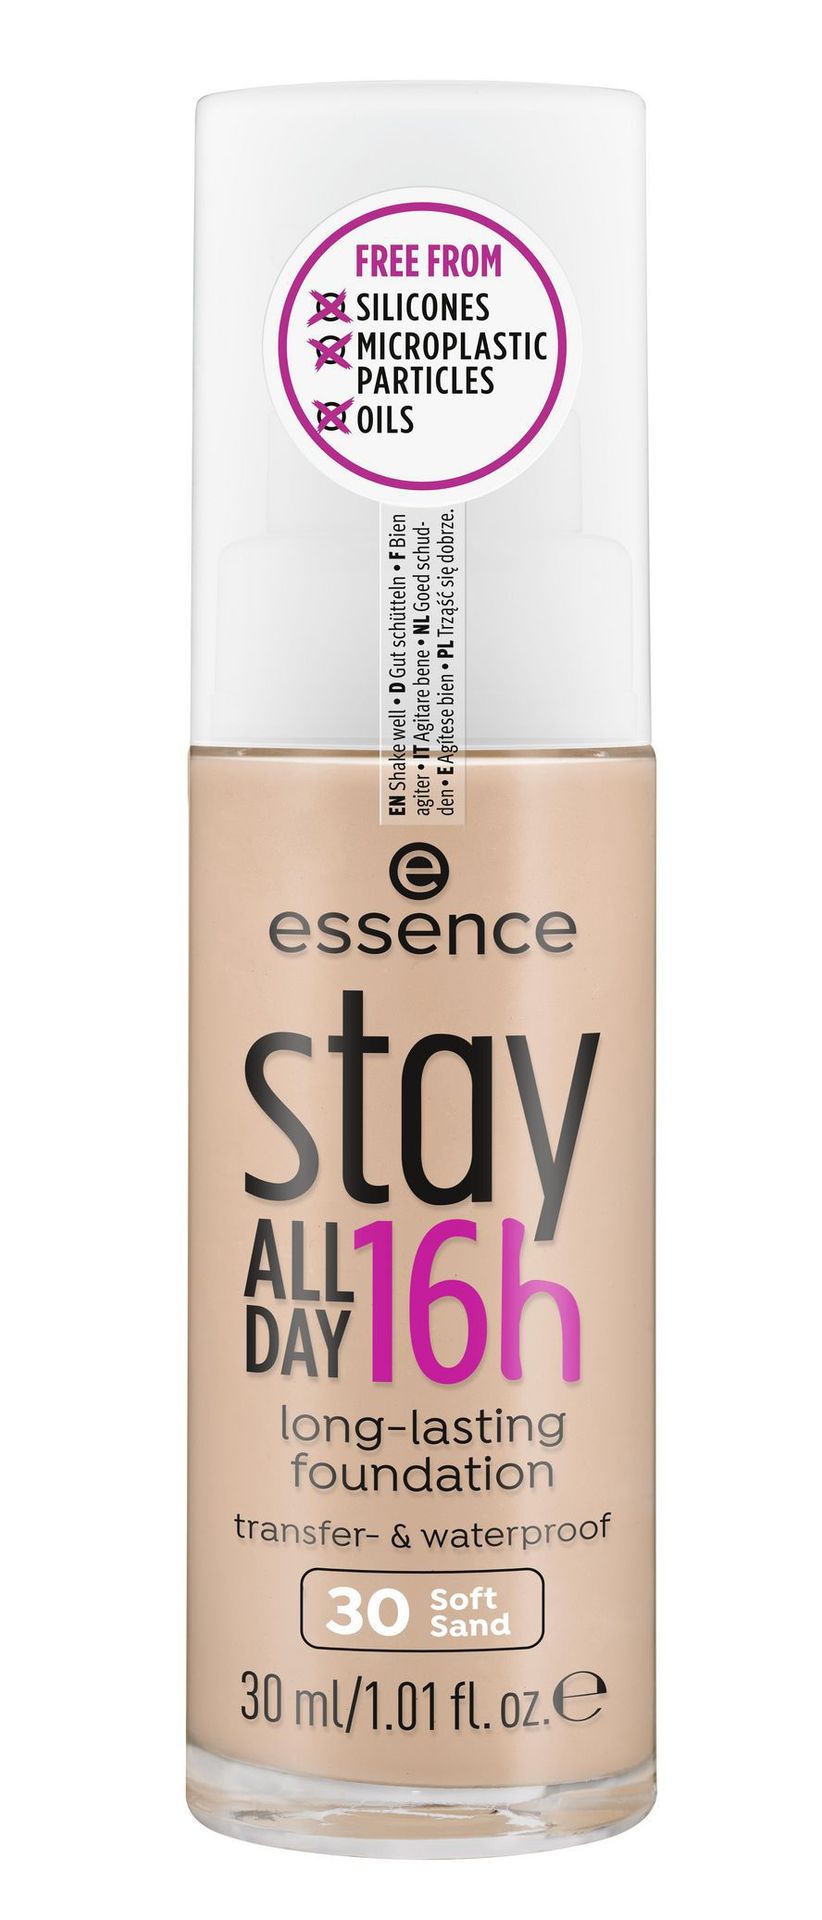 Essence Stay All Day 16h Podkład 30 Soft Sand ESS930821